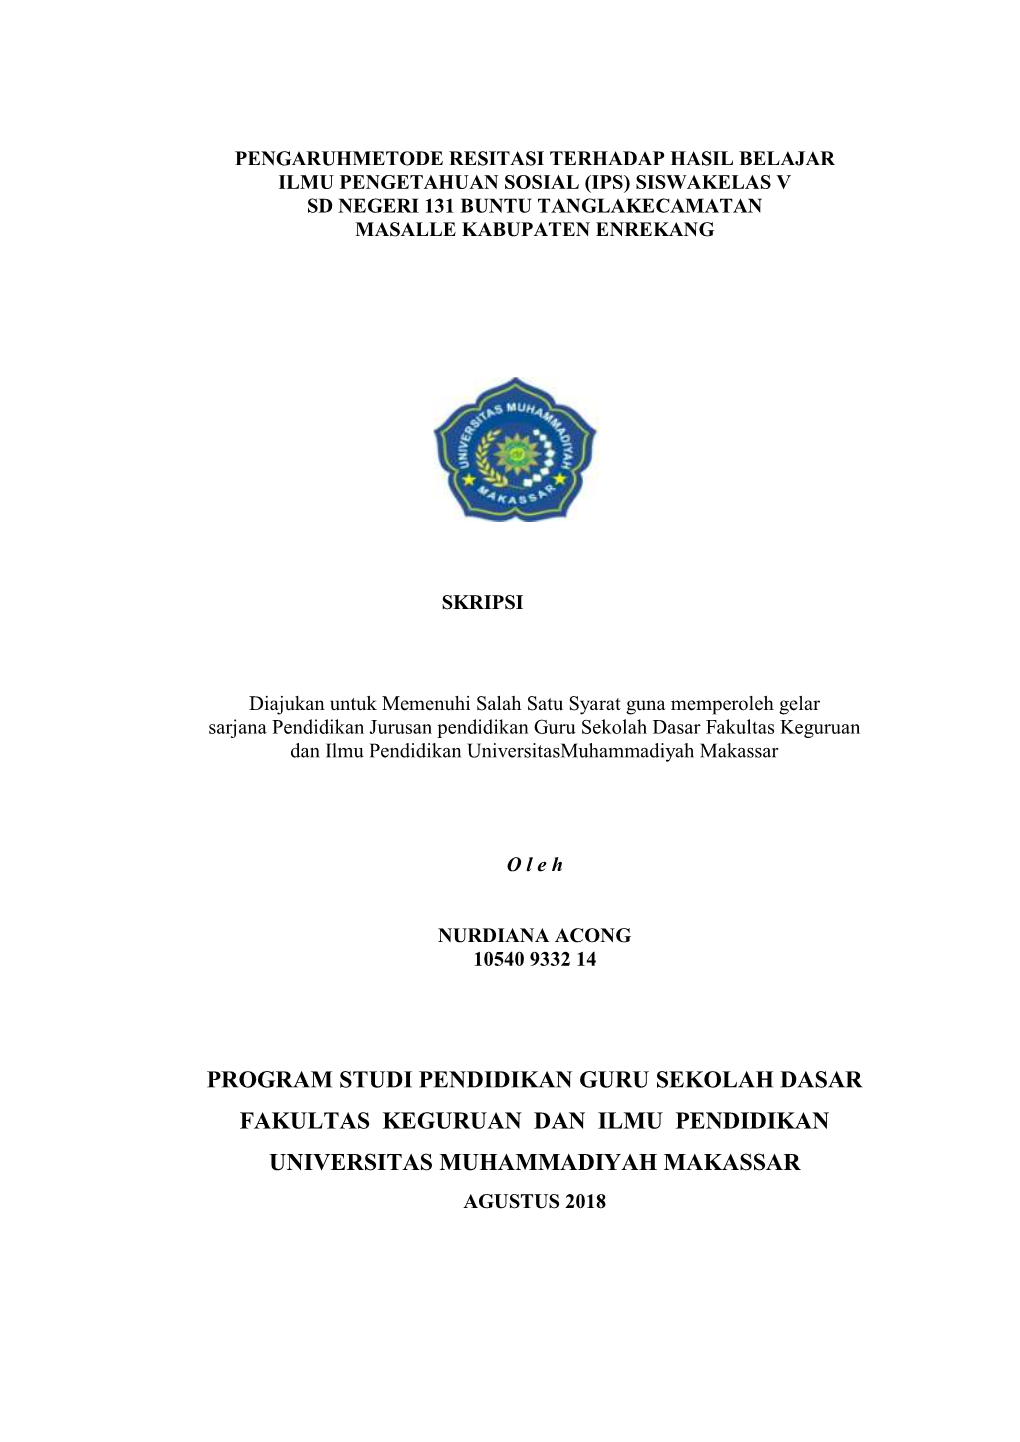 Program Studi Pendidikan Guru Sekolah Dasar Fakultas Keguruan Dan Ilmu Pendidikan Universitas Muhammadiyah Makassar Agustus 2018